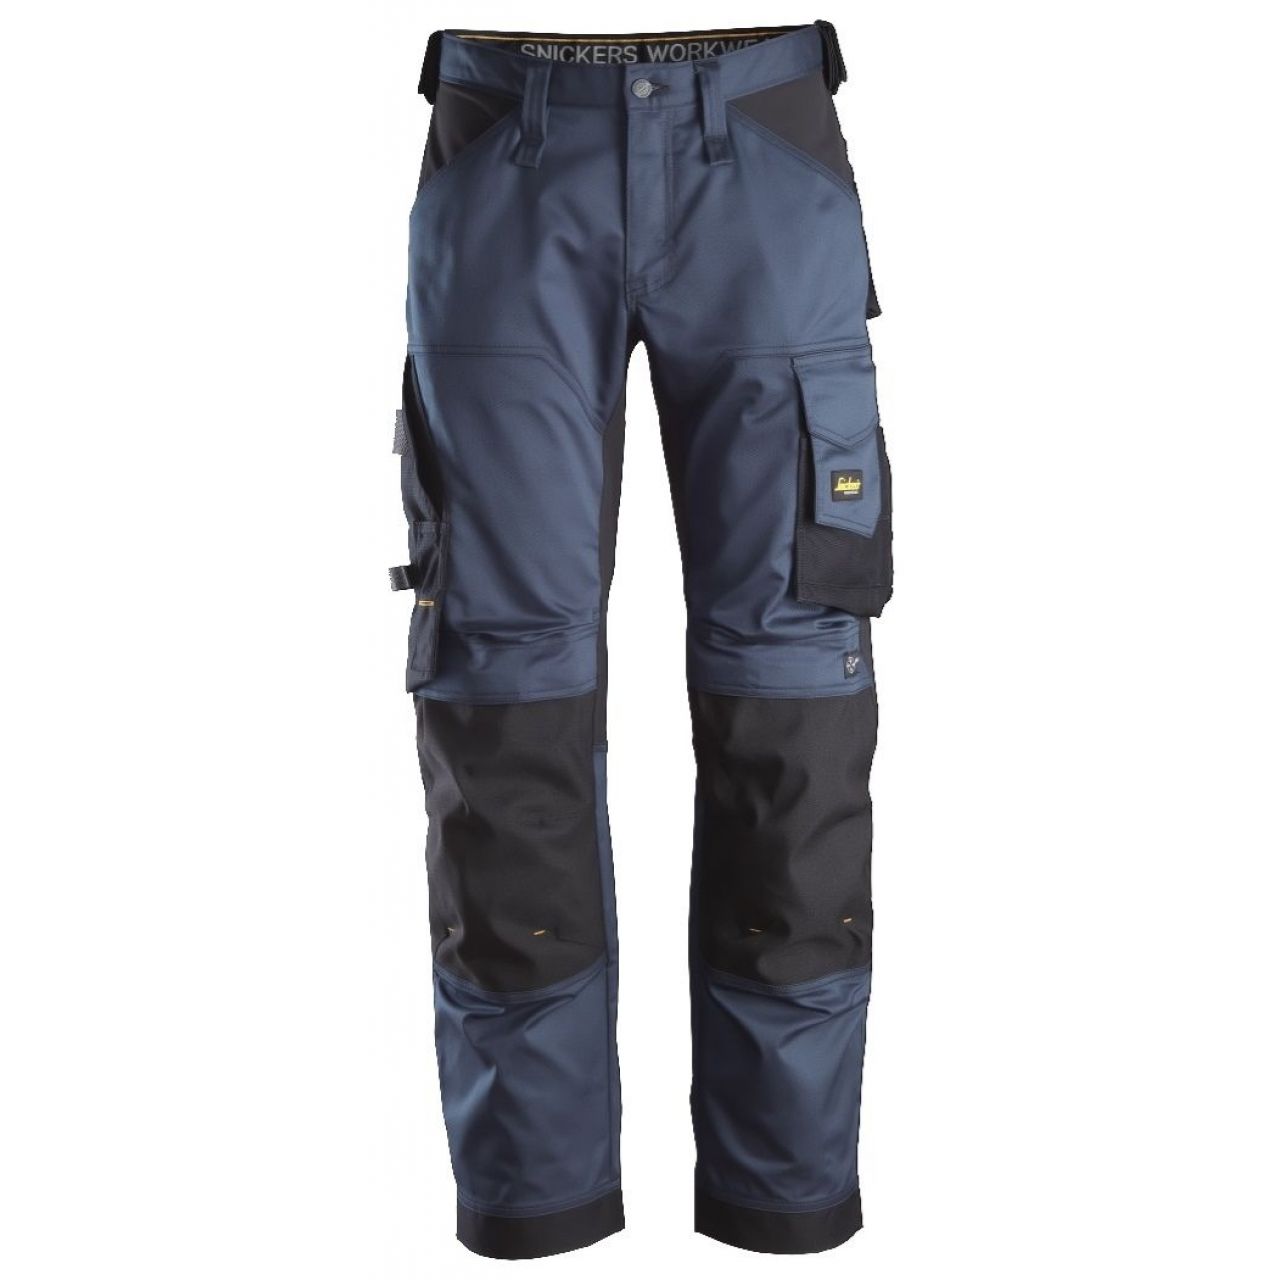 Pantalon elastico ajuste holgado AllroundWork azul marino-negro talla 044